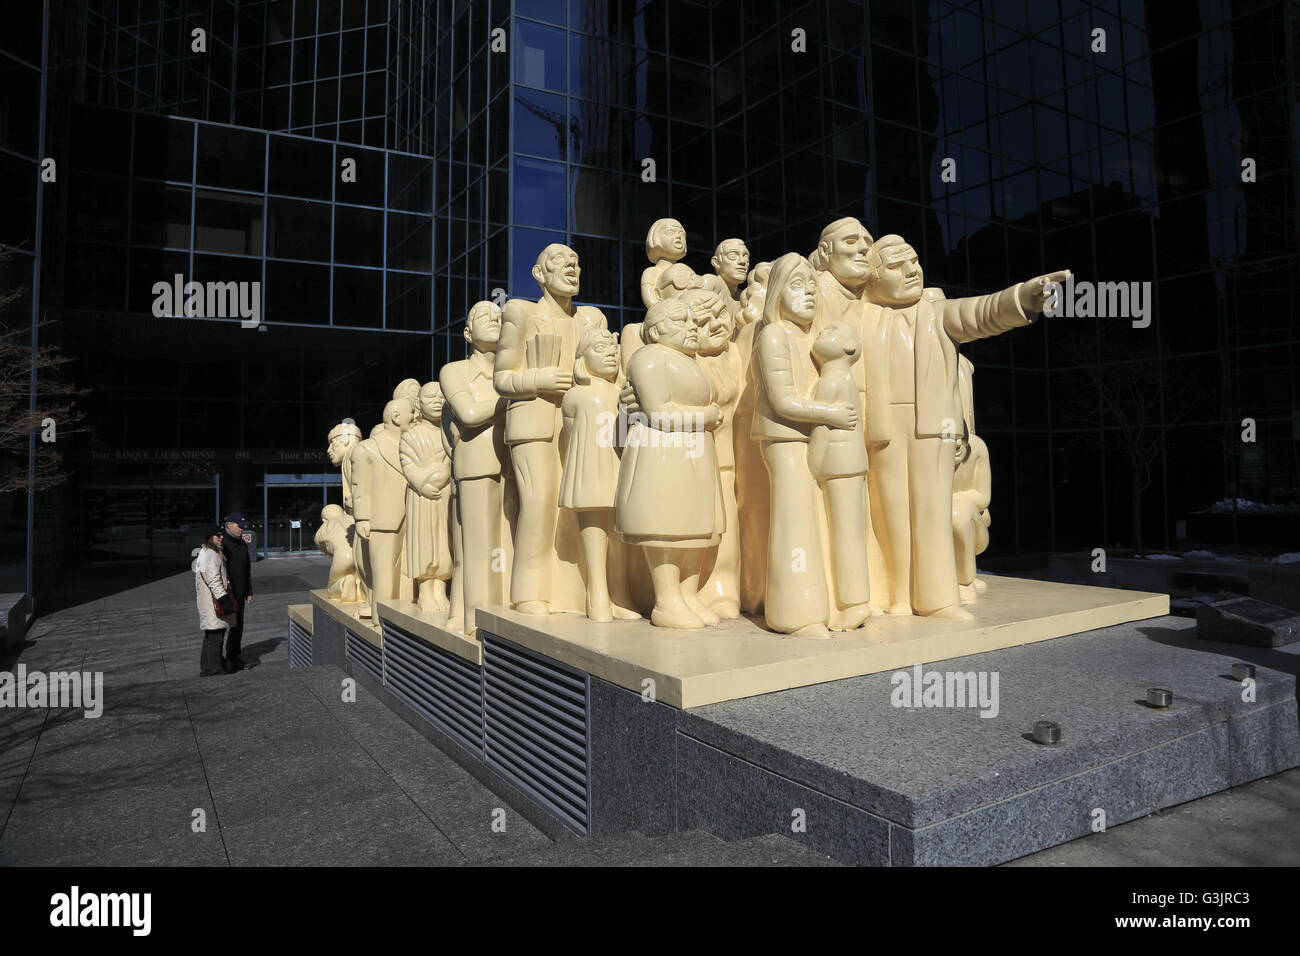 La sculpture la foule illuminée de à Montréal. Québec, Canada Banque D'Images